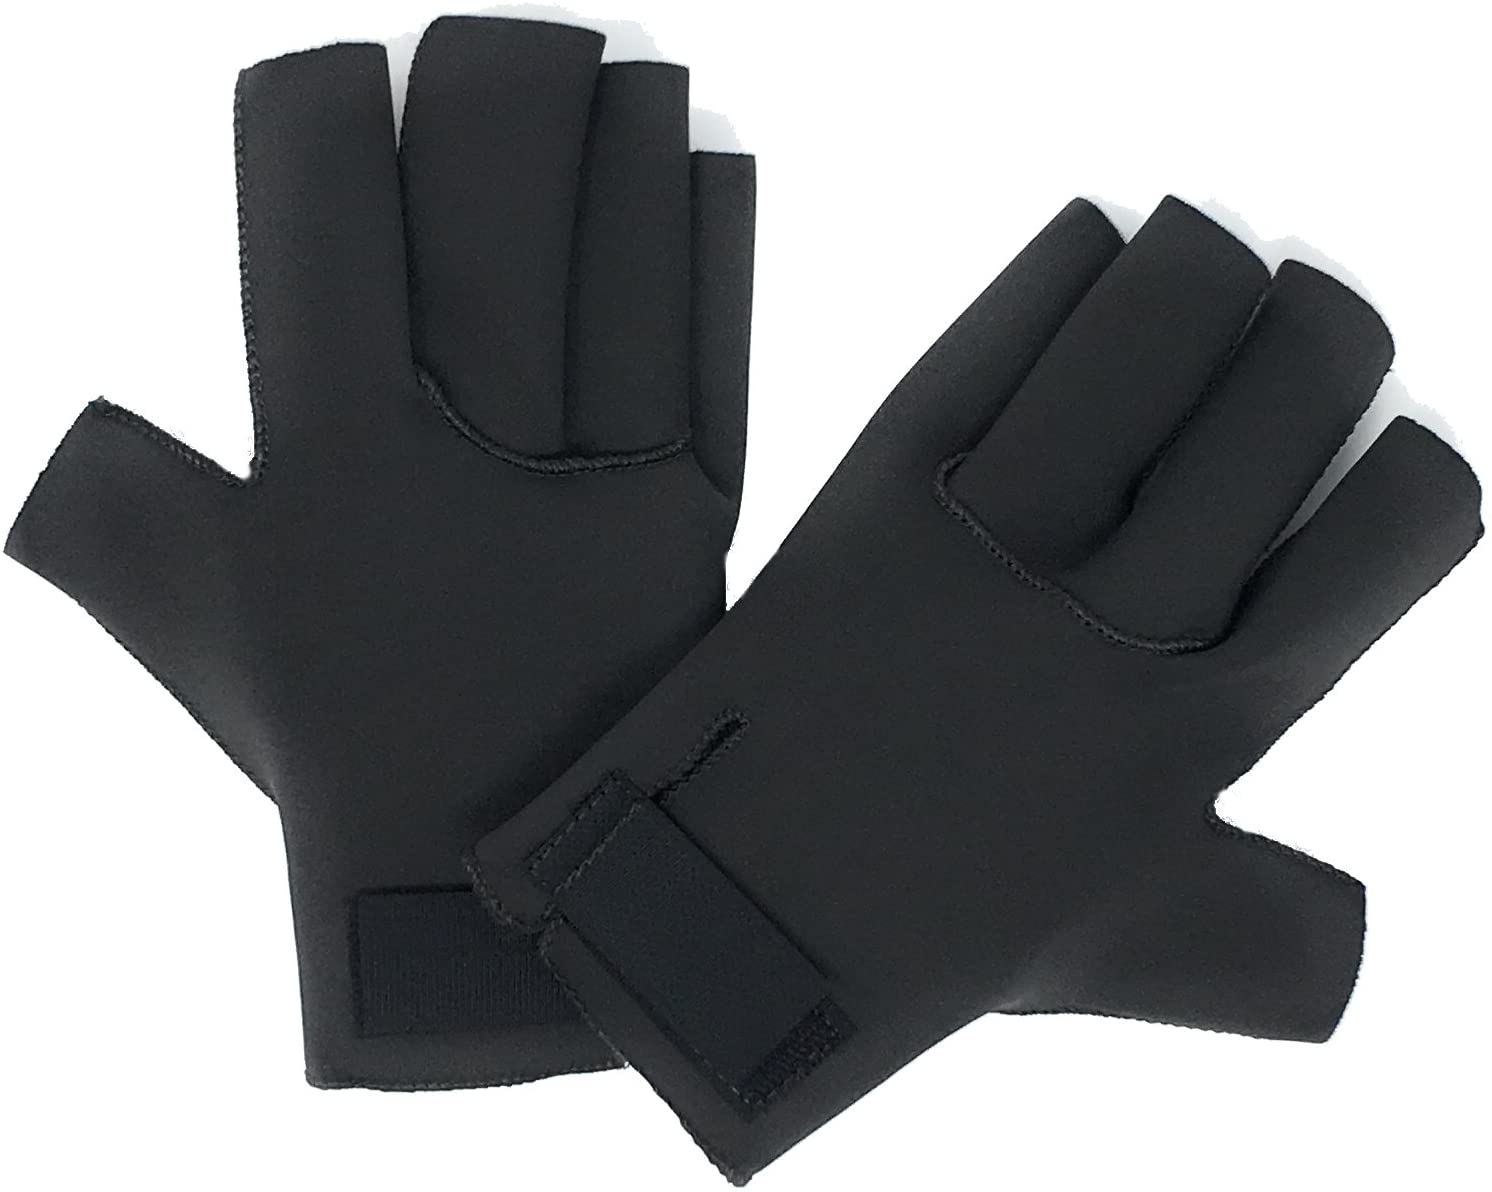 Otc Arthritis Gloves Neoprene Black Xs (6 1/2 - 7